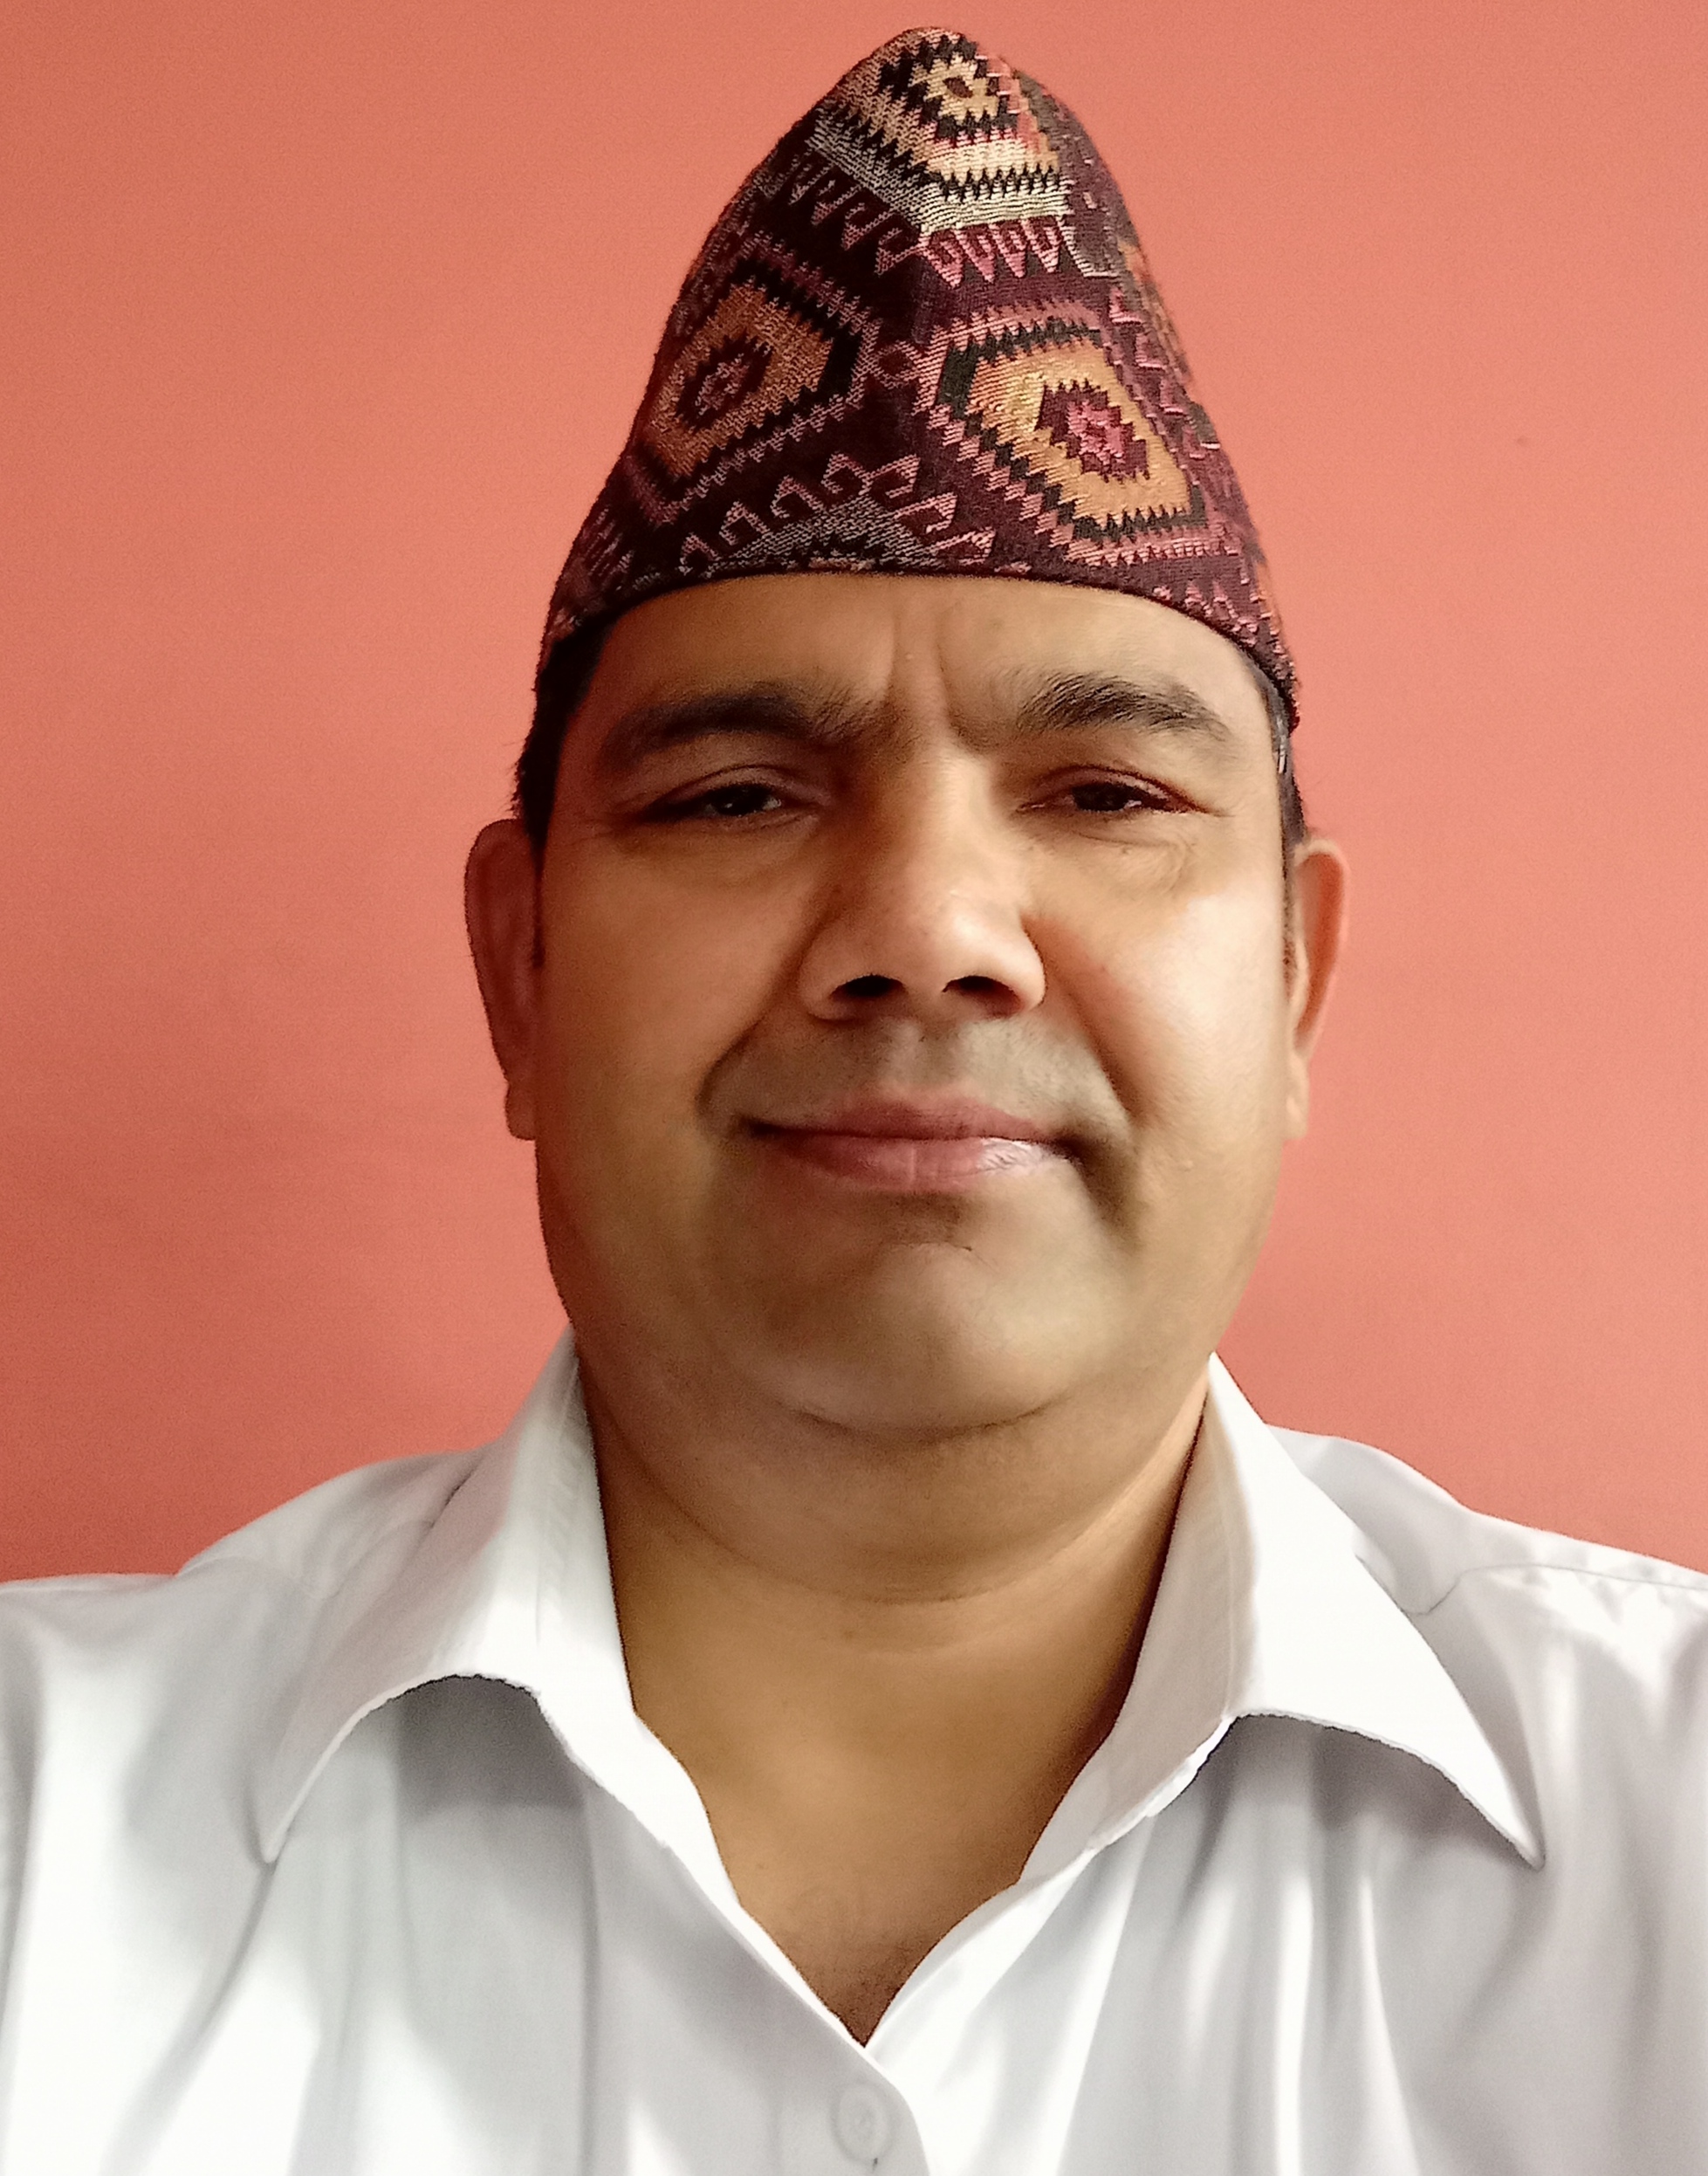 Photo of Kamal Adhikari smiling at the camera and wearing a hat.